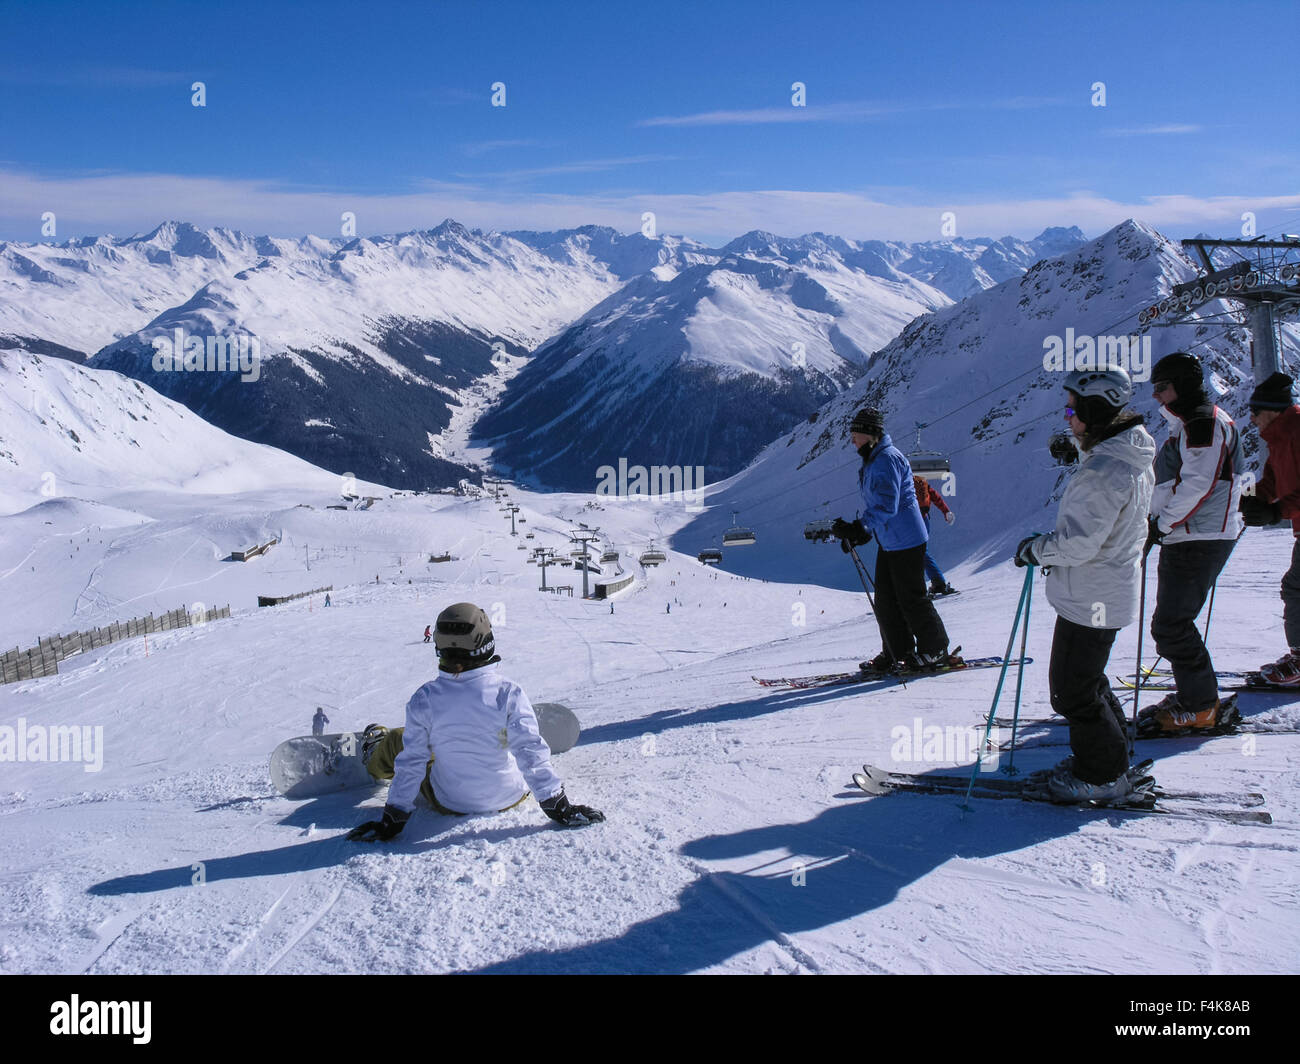 Klosters Ski Resort Stock Photos & Klosters Ski Resort Stock ...